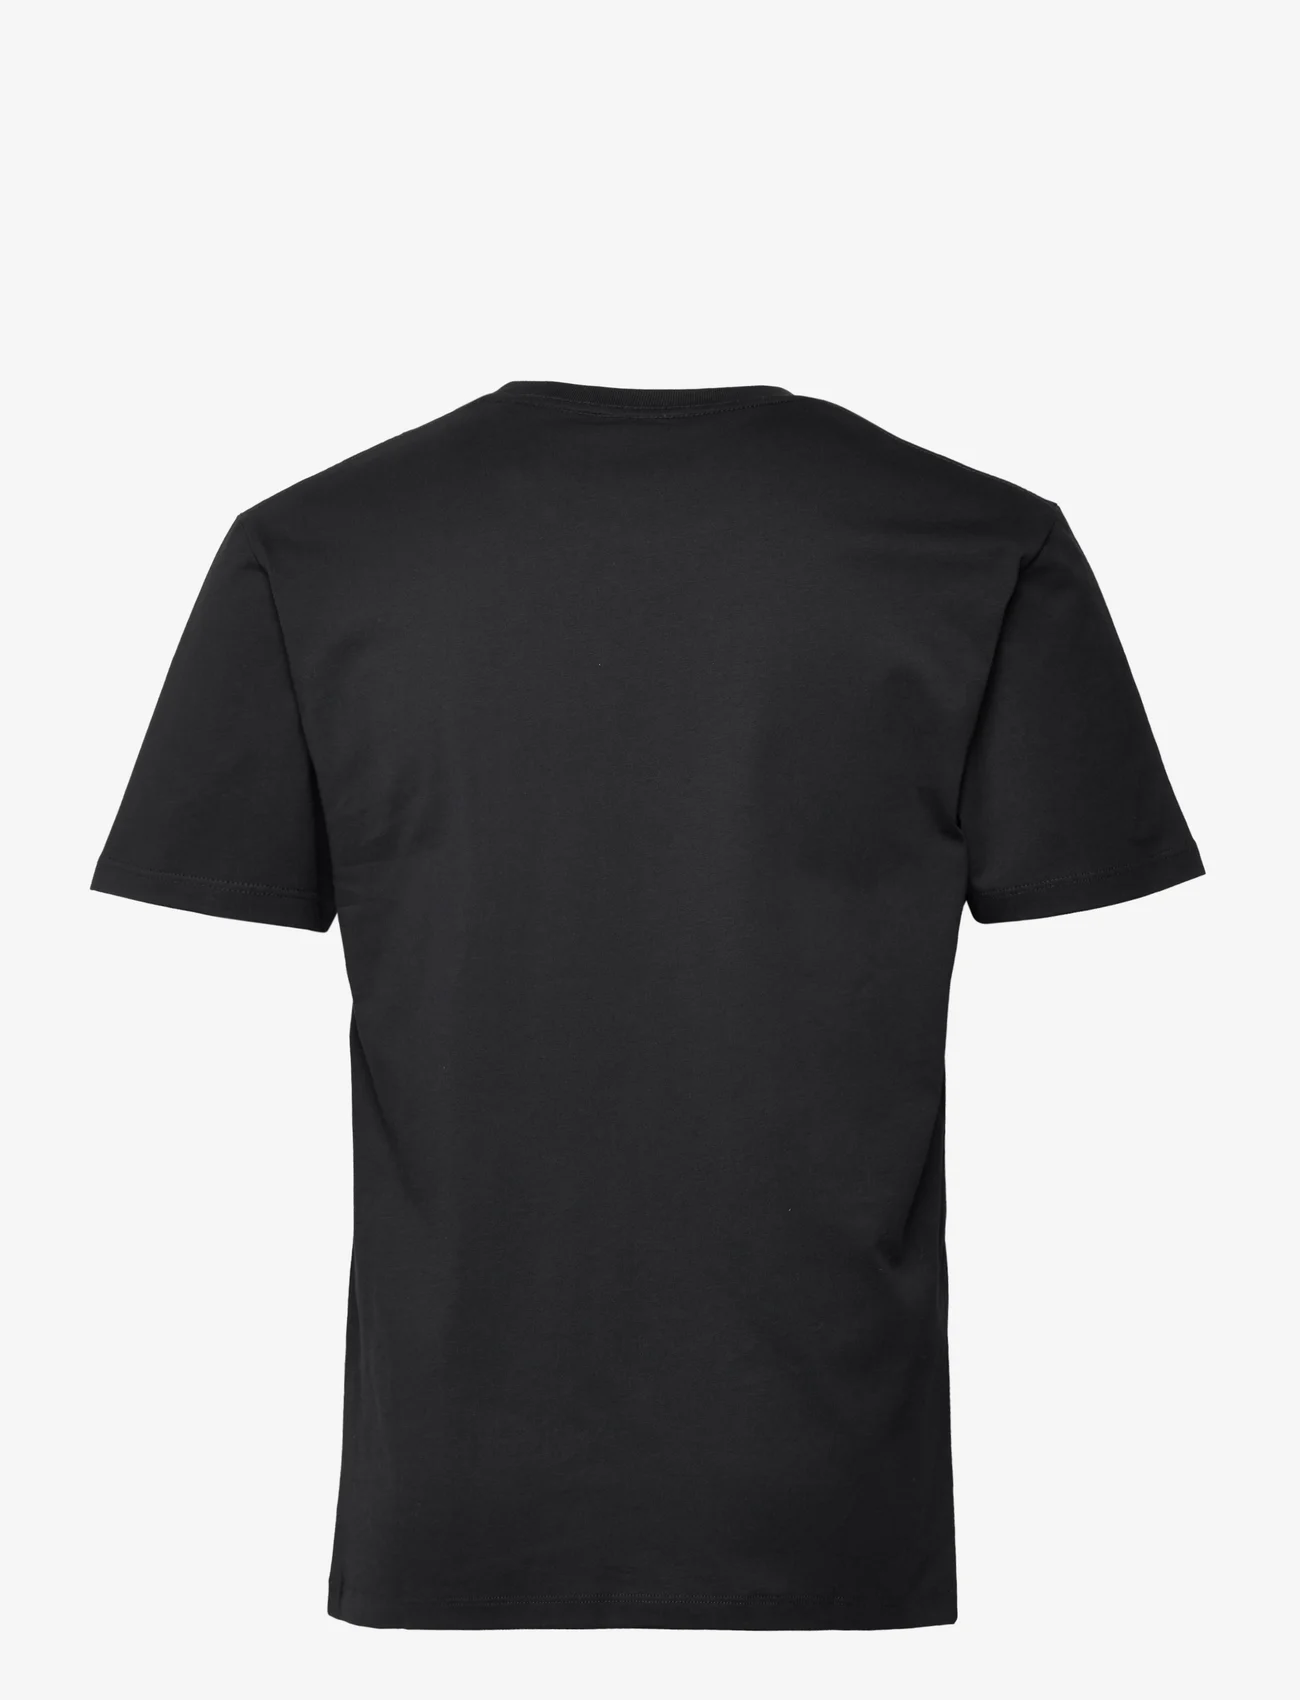 The Kooples - T-SHIRT MC - laisvalaikio marškinėliai - black - 1